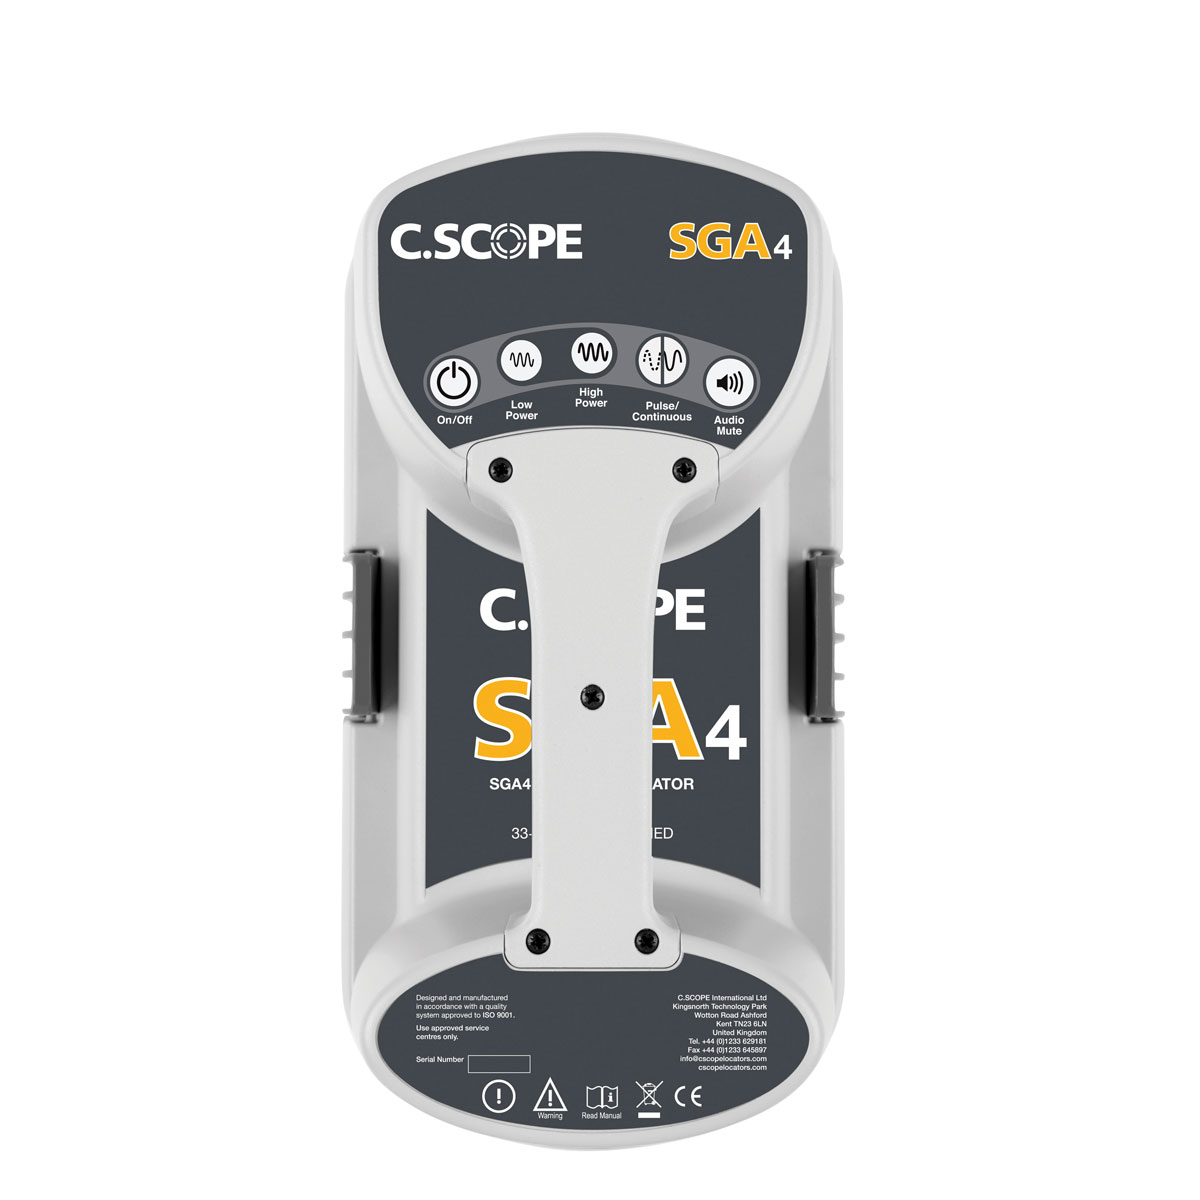 Sender SGA4 von C.Scope mit 2 Einstellungen ohne Display